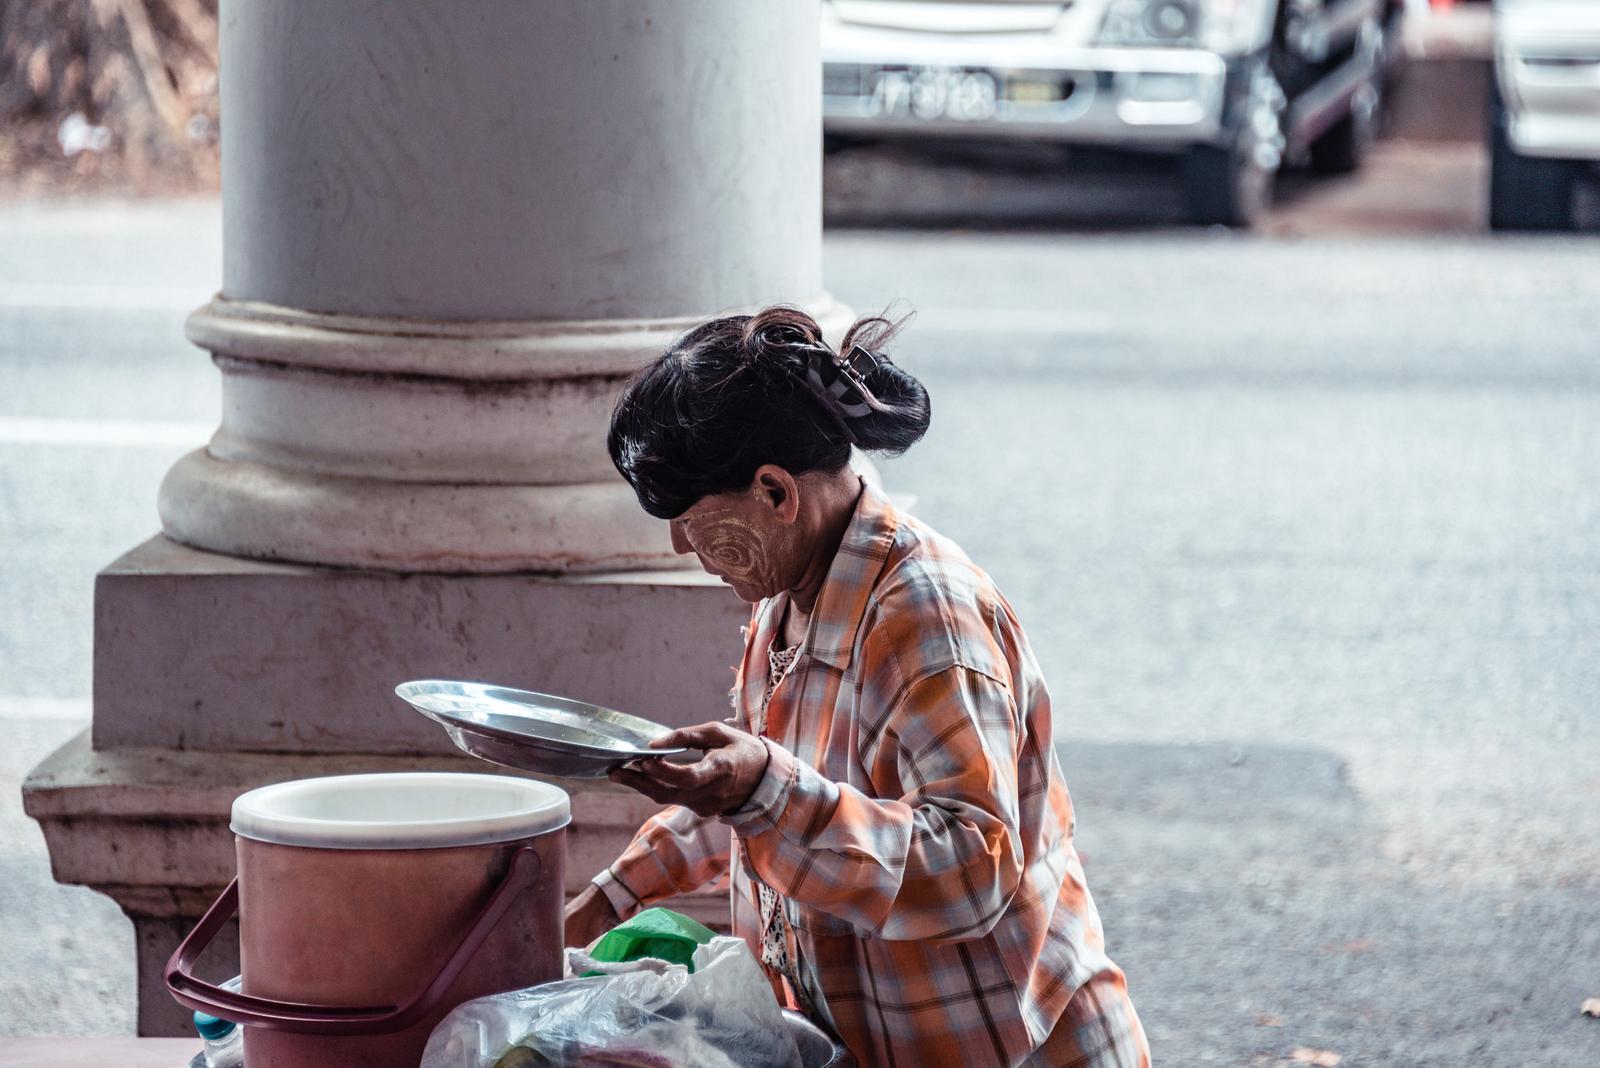 A Street Vendor